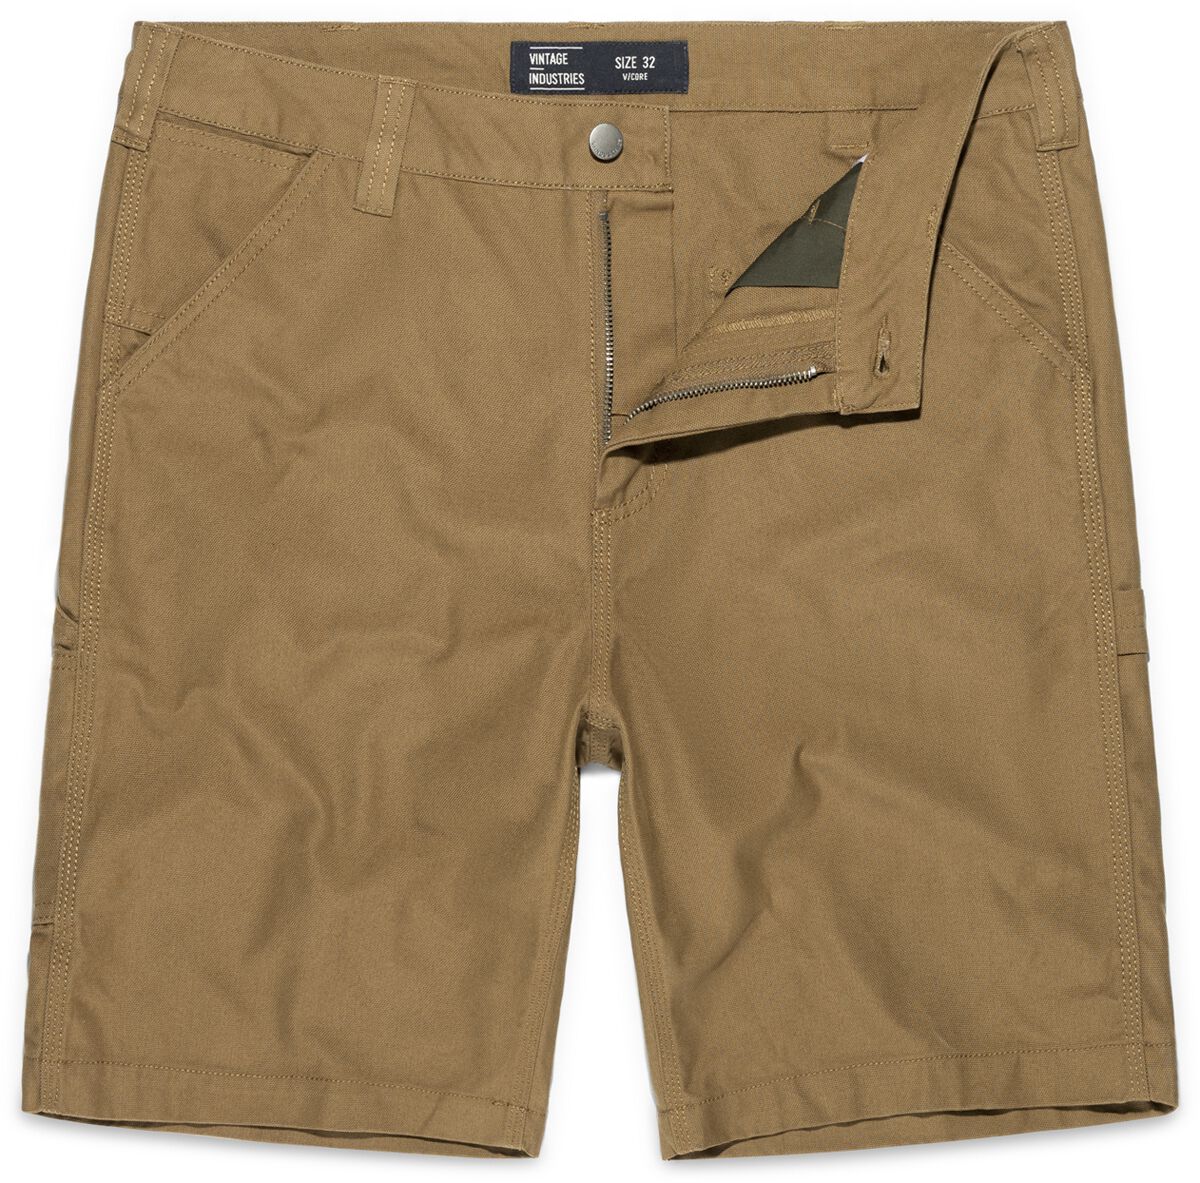 Vintage Industries Dayton Shorts Short beige in 32